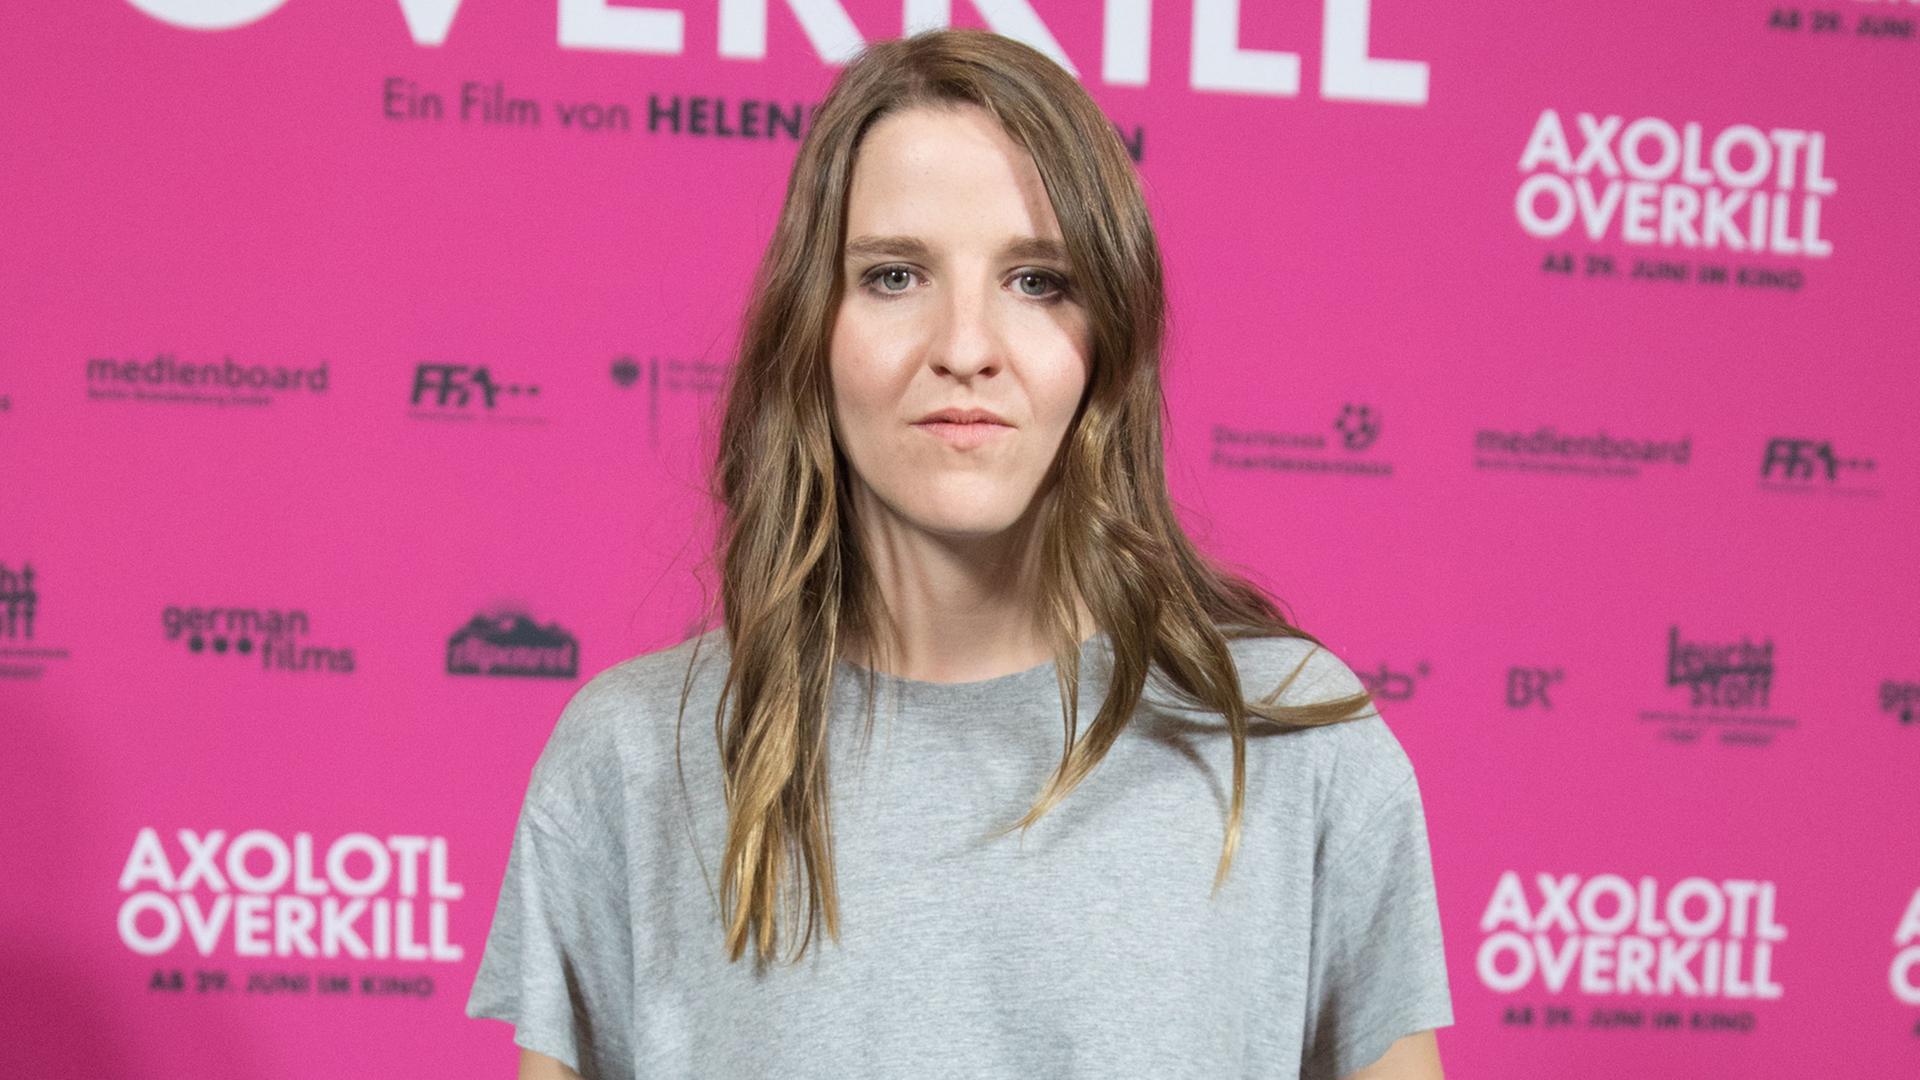 Die Regisseurin und Drehbuchautorin Helene Hegemann kommt zur Premiere des Kinofilms "Axolotl Overkill" in die Volksbühne in Berlin.